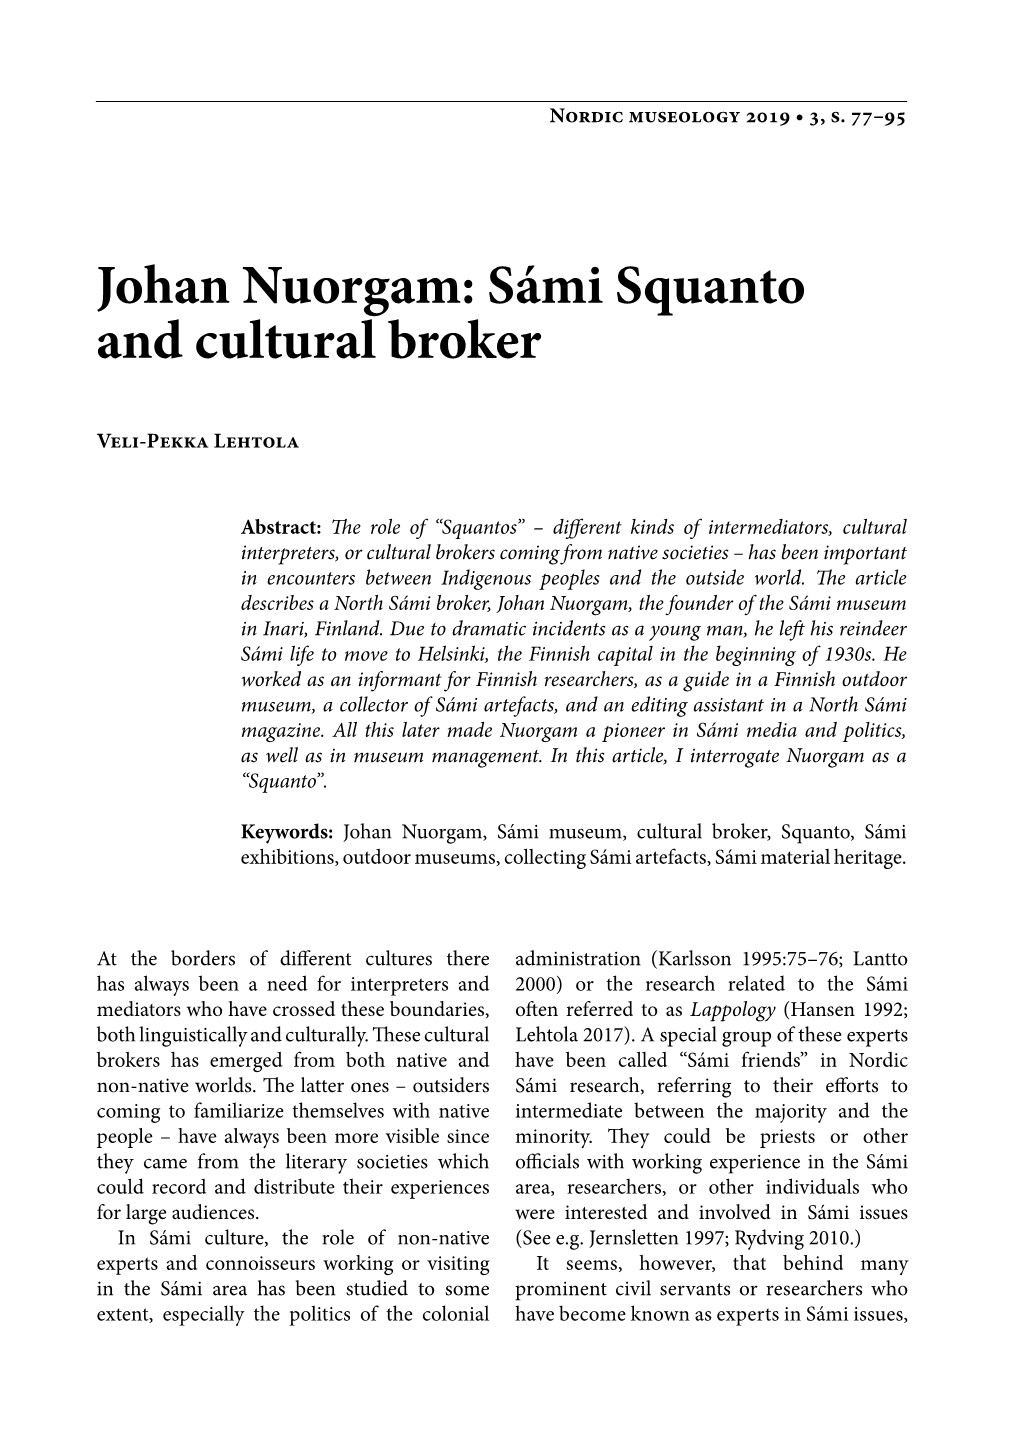 Johan Nuorgam: Sámi Squanto and Cultural Broker